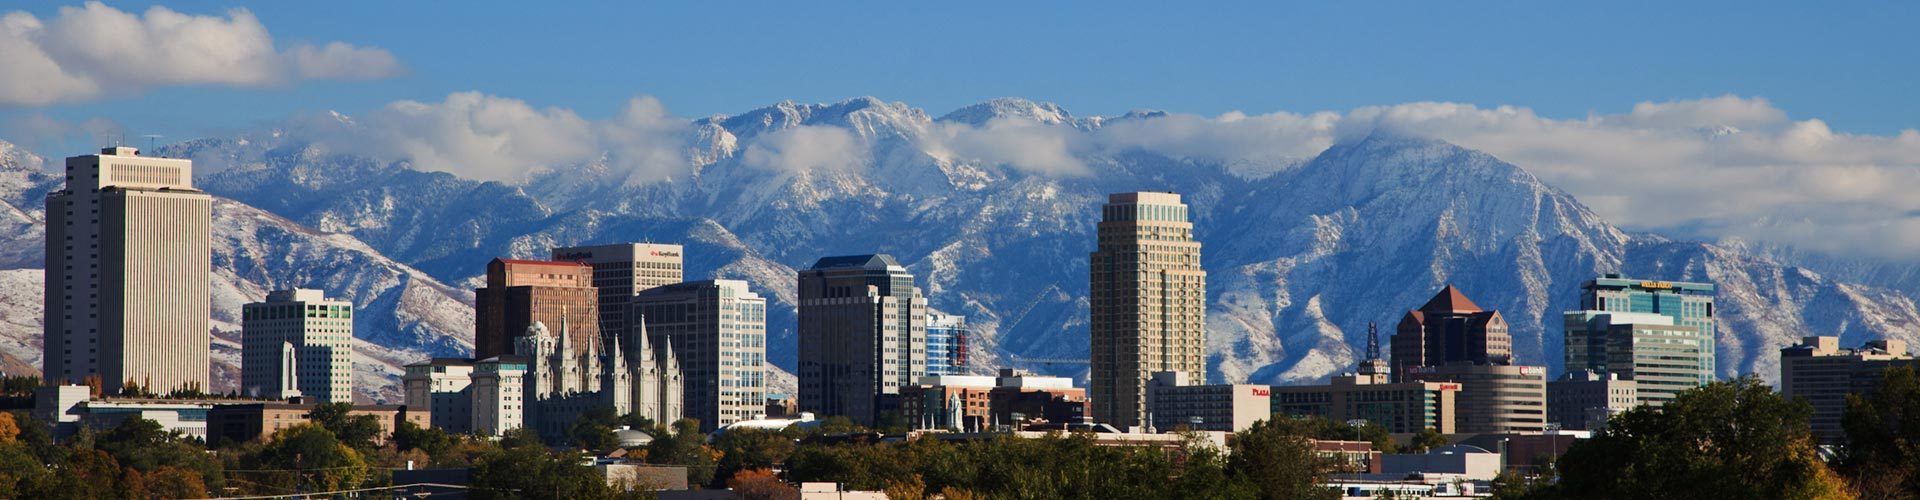 Skyline von Salt Lake City, Utah